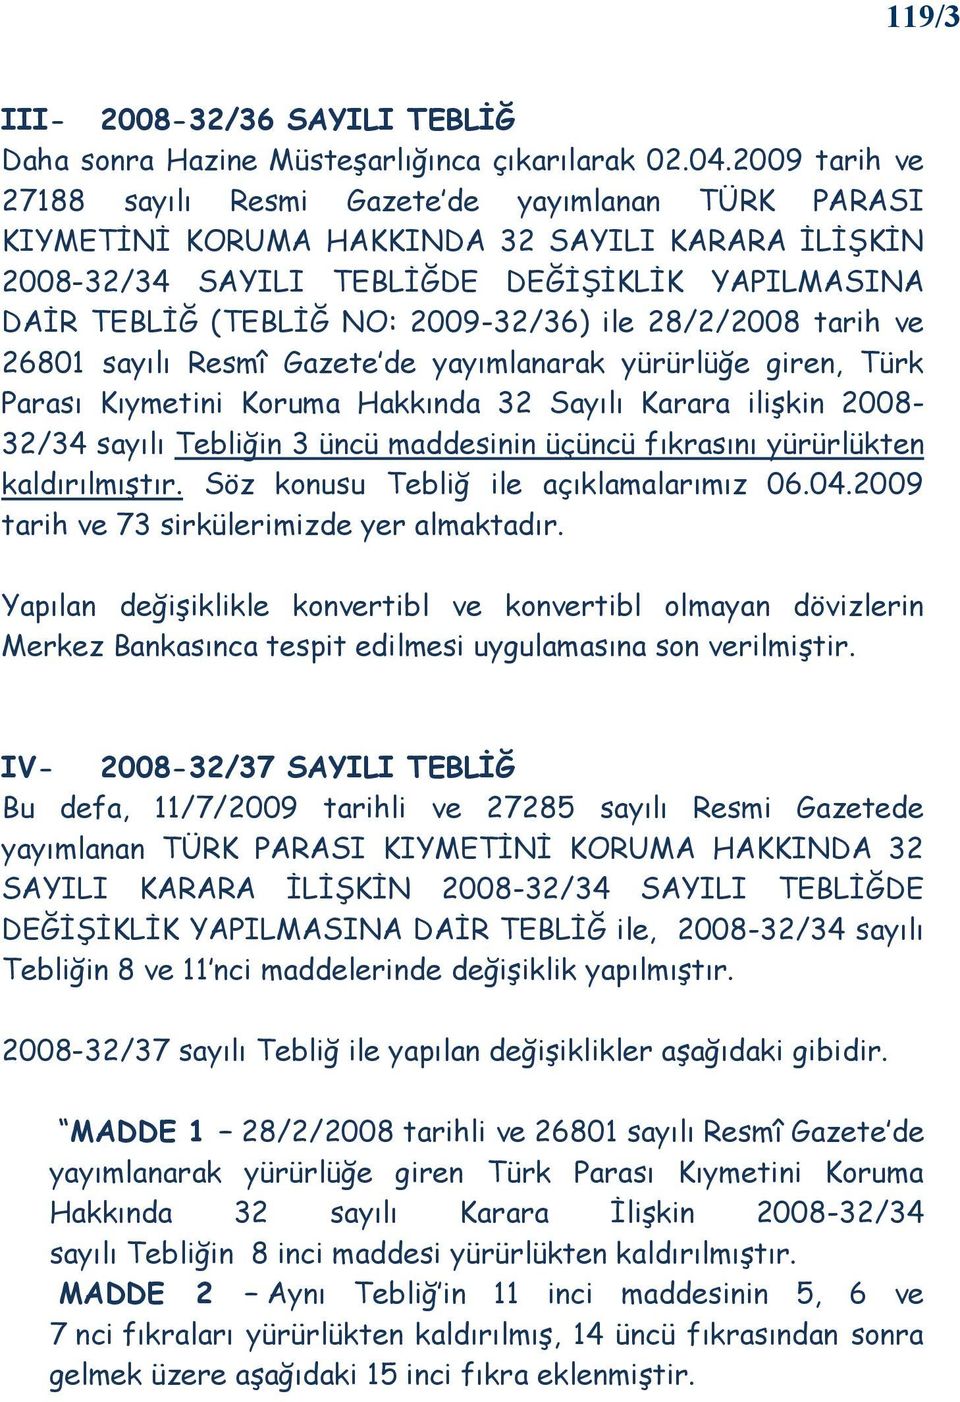 2009-32/36) ile 28/2/2008 tarih ve 26801 sayılı Resmî Gazete de yayımlanarak yürürlüğe giren, Türk Parası Kıymetini Koruma Hakkında 32 Sayılı Karara ilişkin 2008-32/34 sayılı Tebliğin 3 üncü